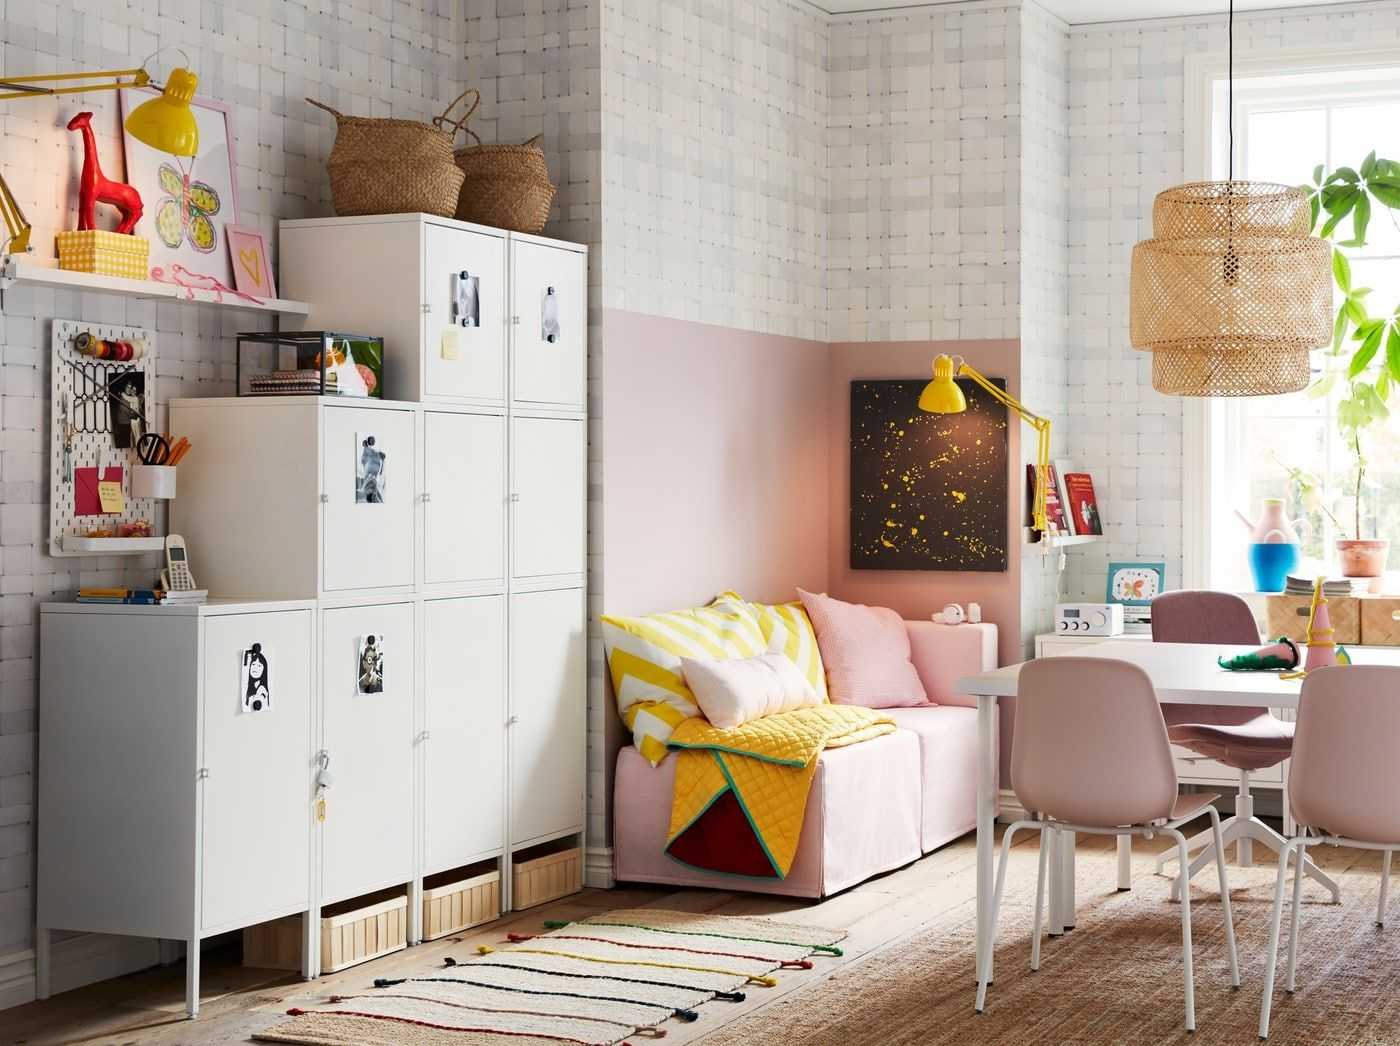 Детская мебель икеа – лучшие идеи и варианты ее применения. 100 фото оригинальных моделей из последних каталогов